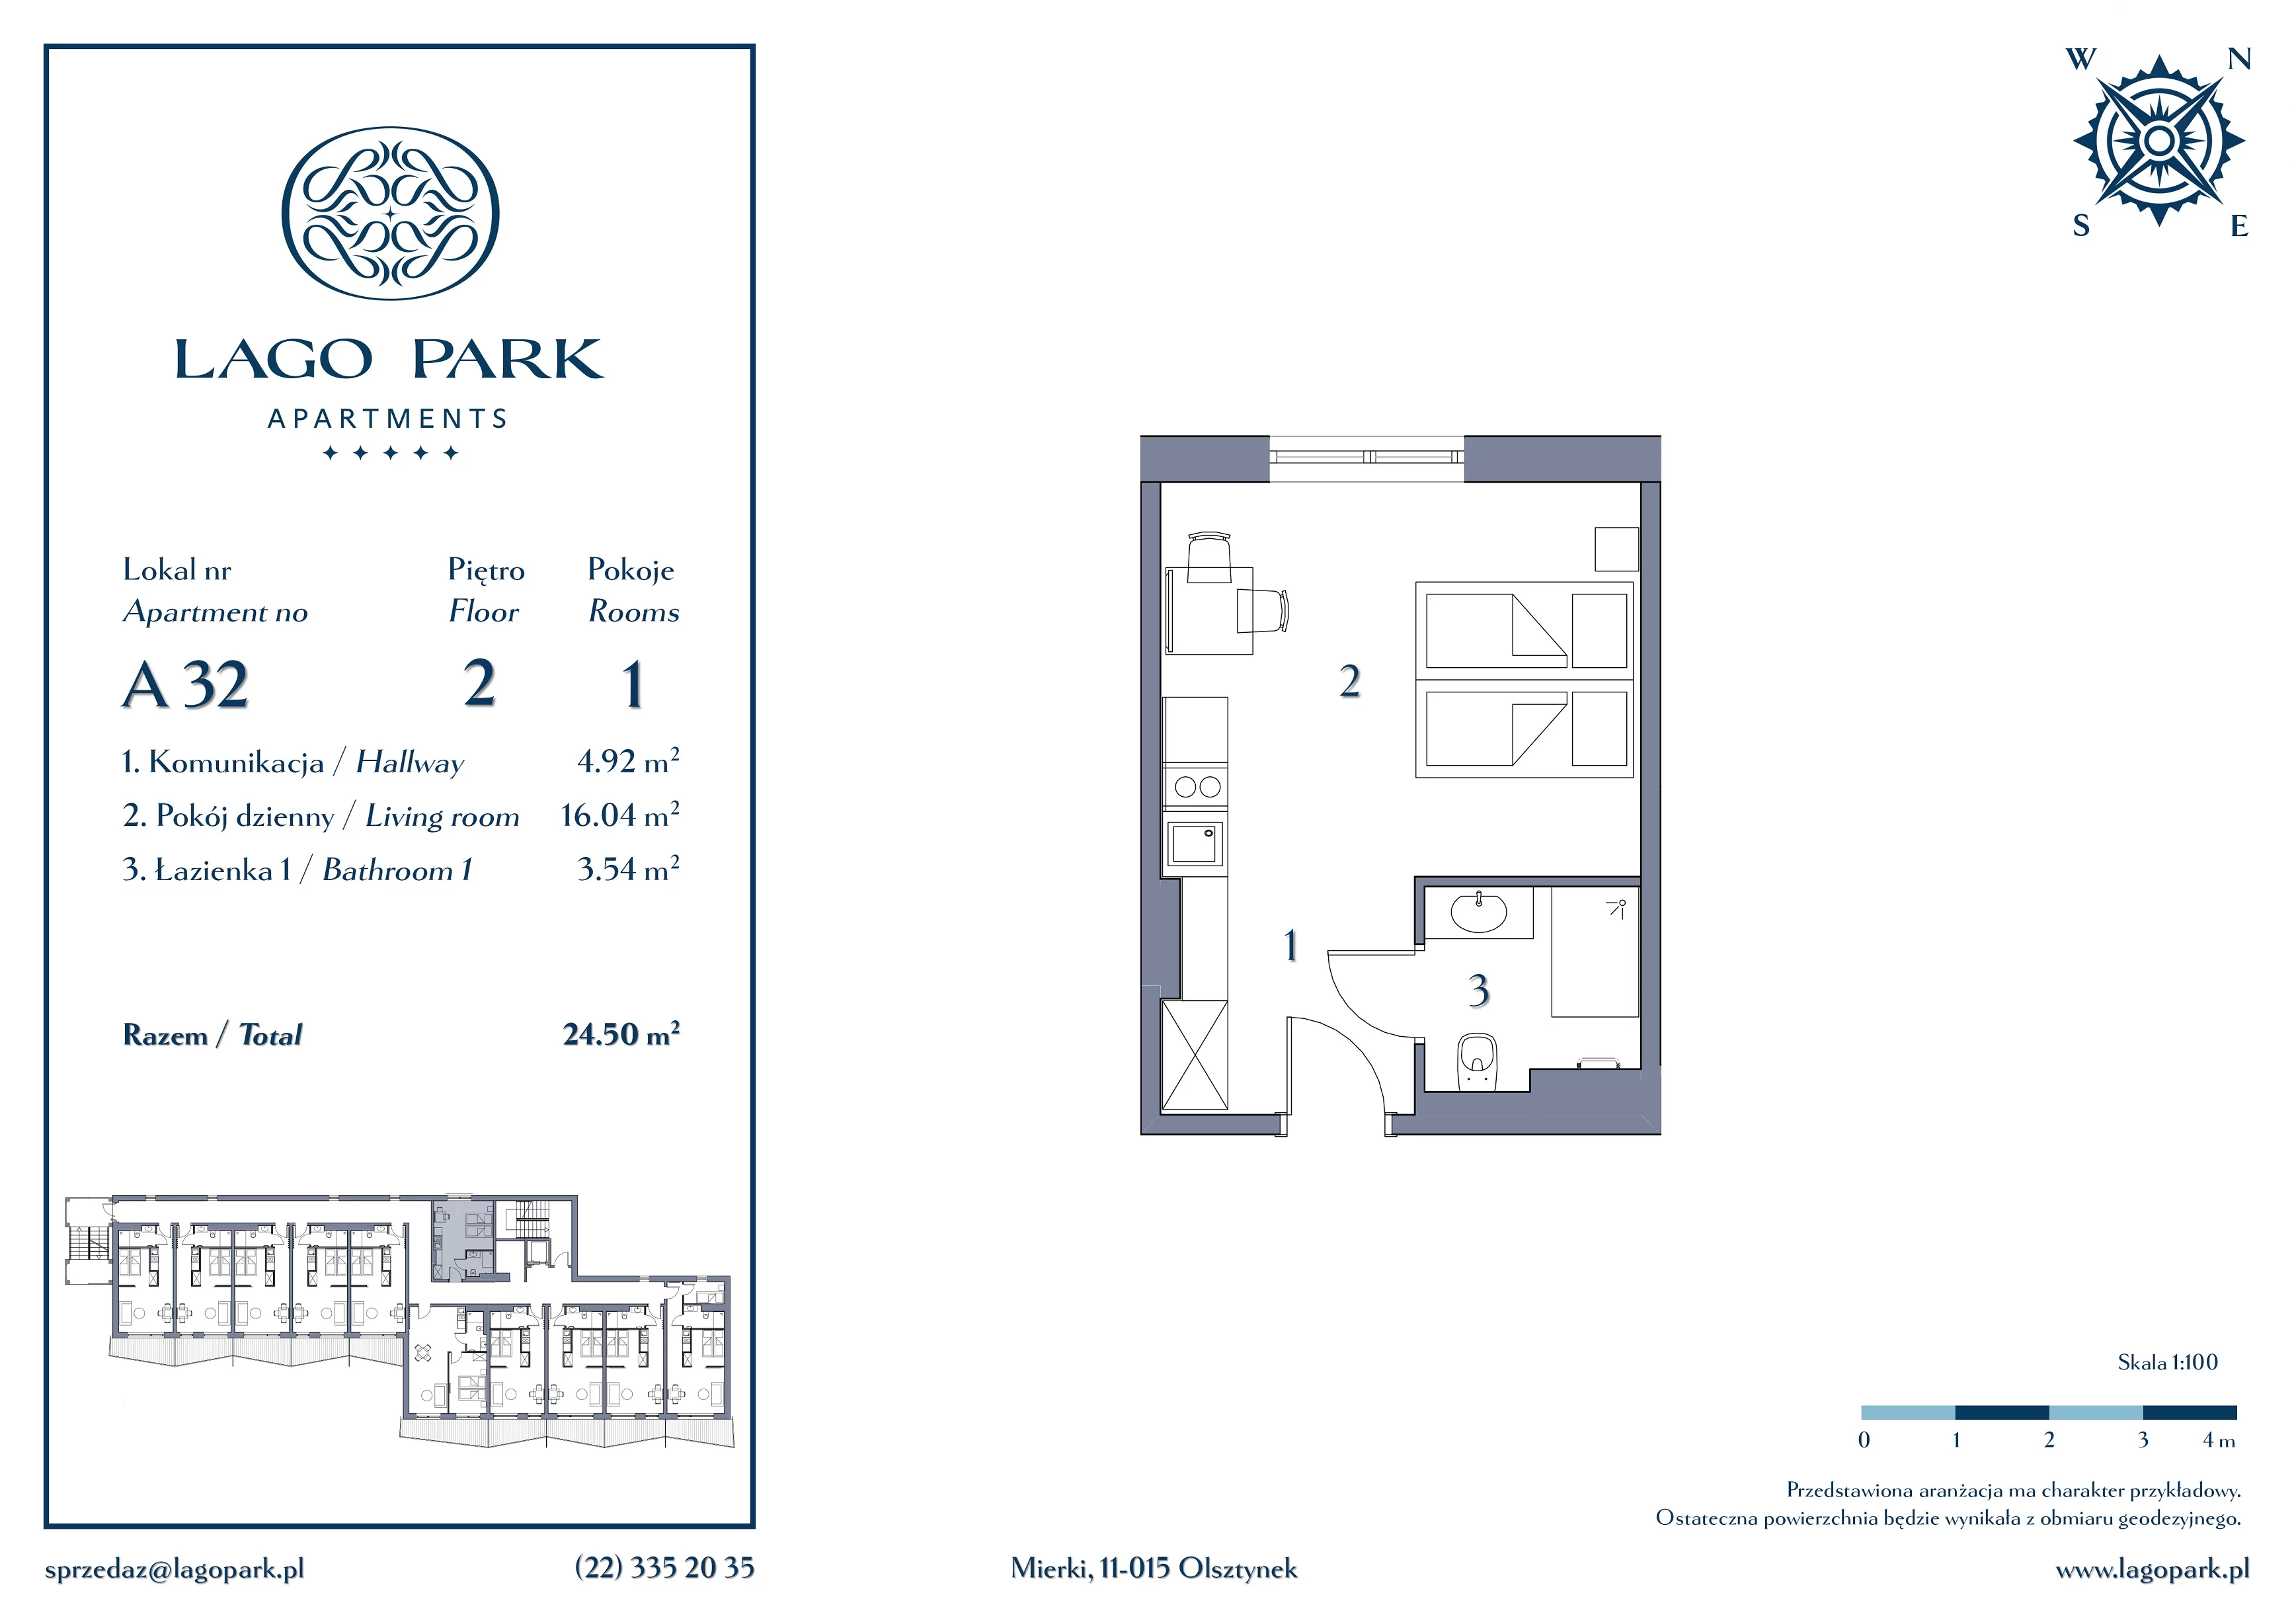 Apartament inwestycyjny 24,50 m², piętro 2, oferta nr A32, Lago Park Apartments by Aries, Mierki, Kołatek 2